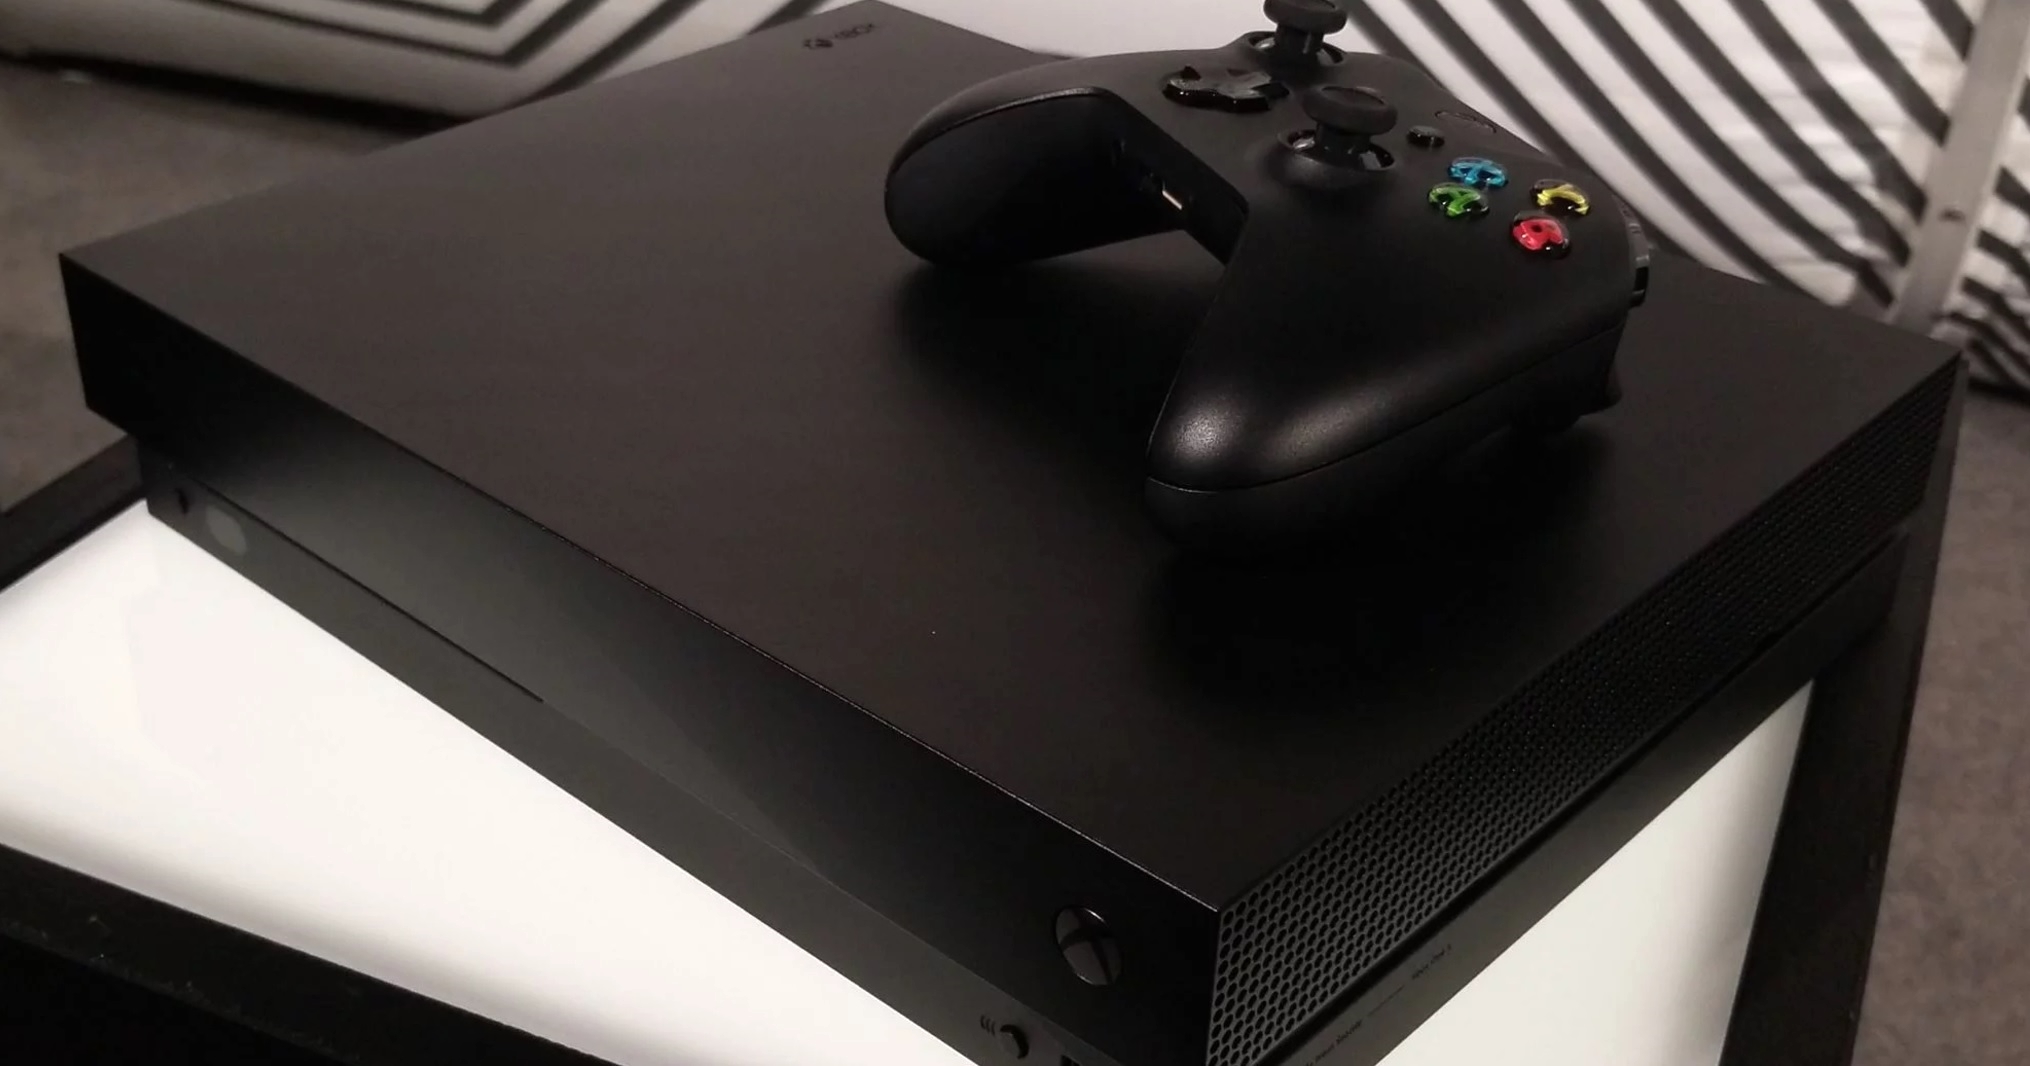 Microsofts Xbox One X lanseres i Norge 7. november til 4999 kroner, men man vil kunne forhåndsbestille den snart. Vil det bli konsoll-manko?